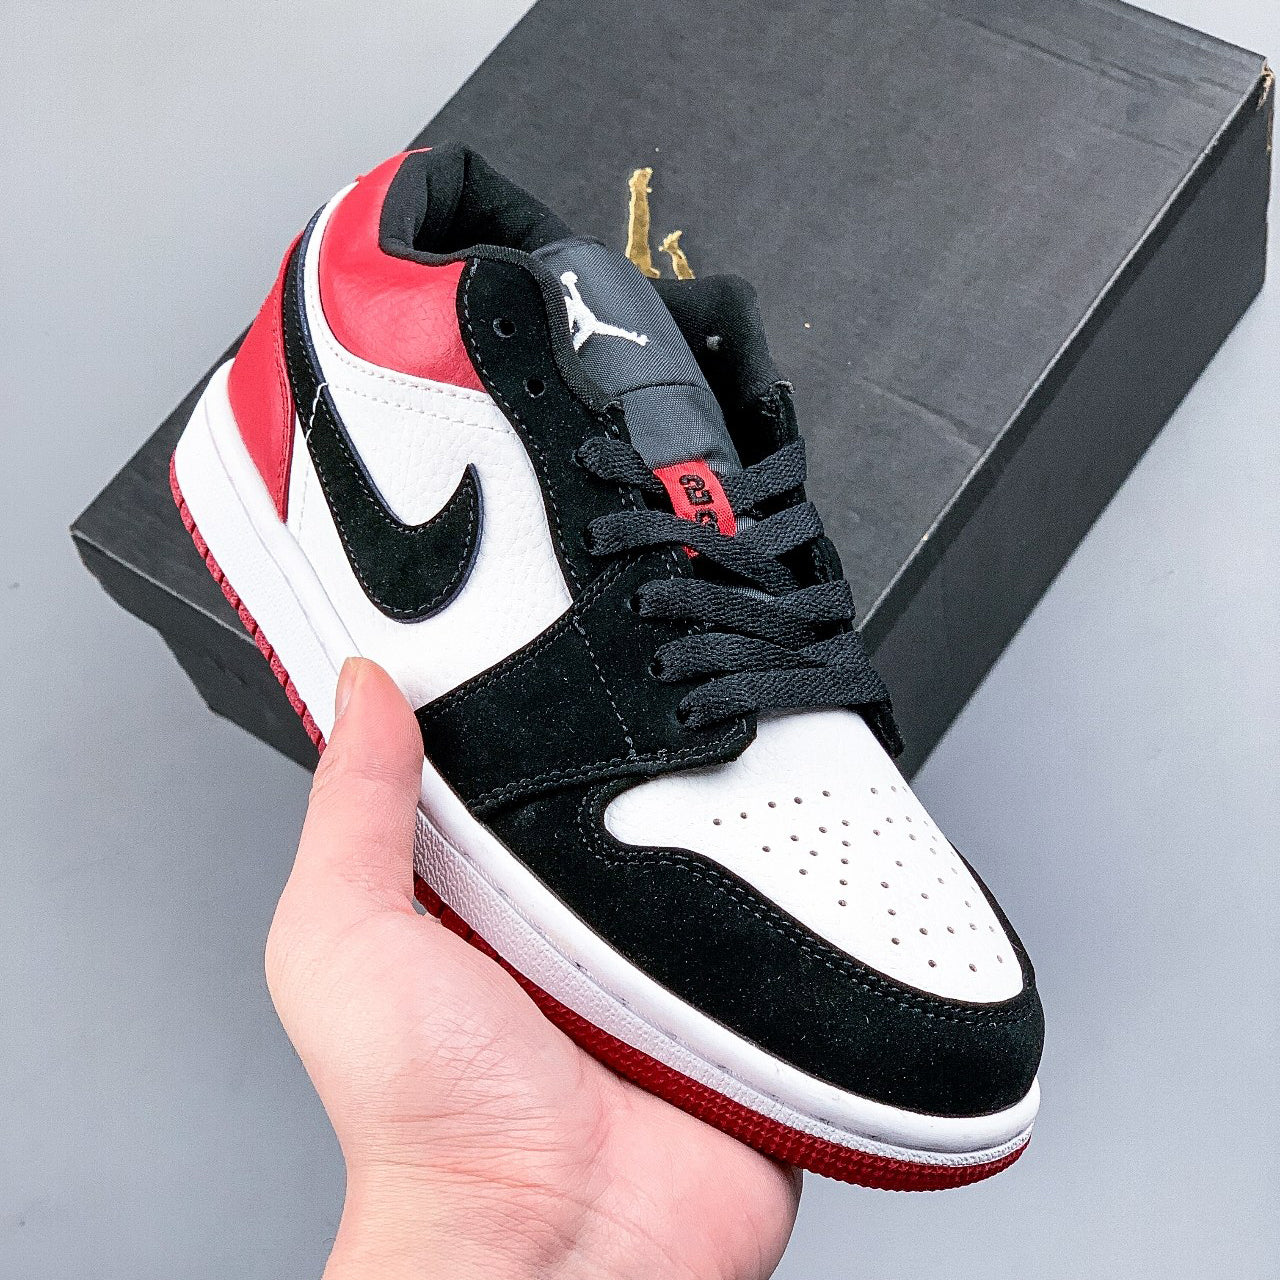 Nike Air Jordan 1 Low Black Toe Sneakers Shoes